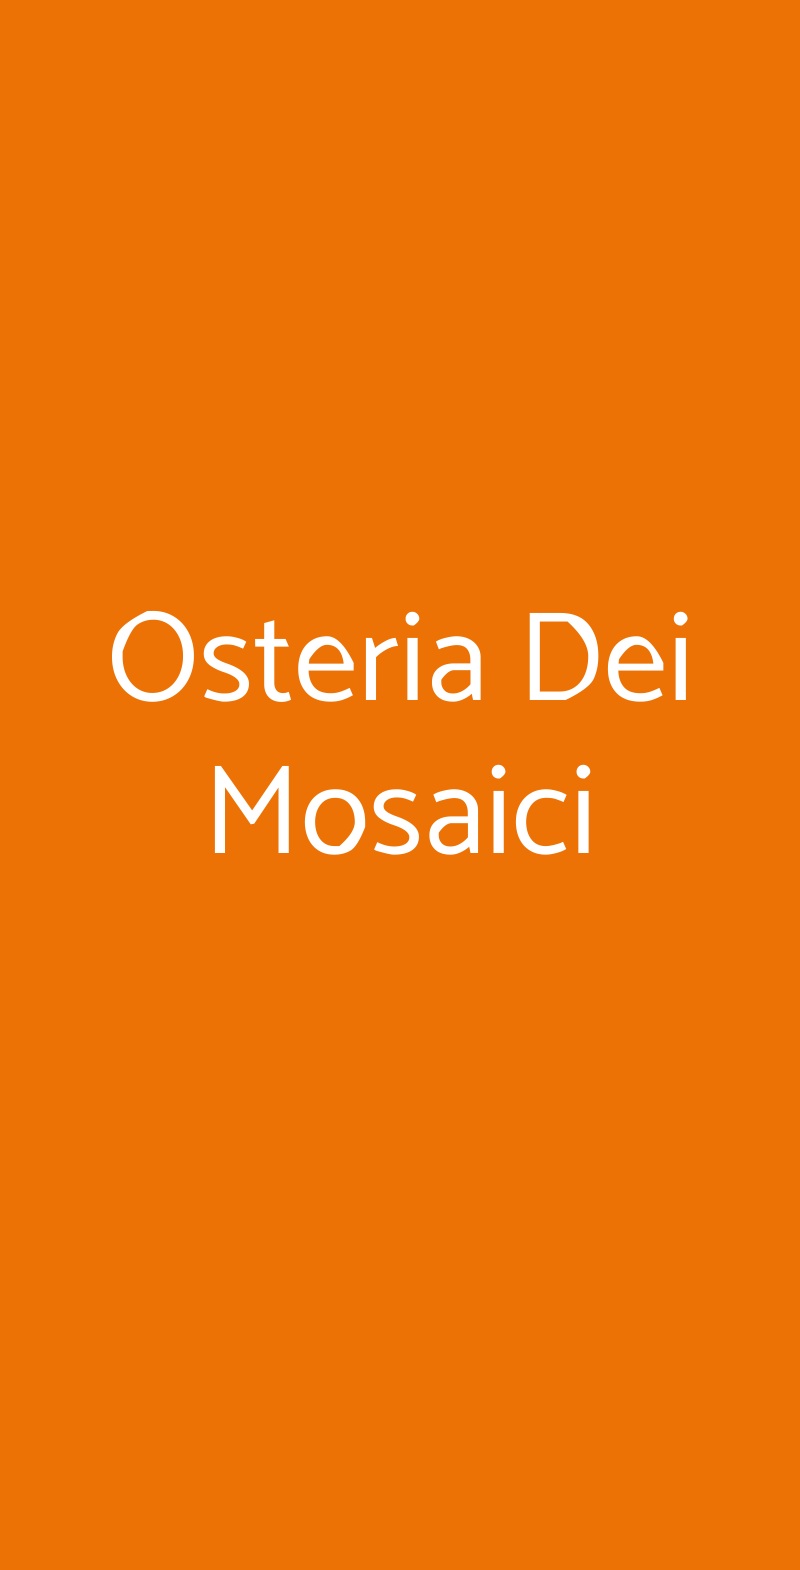 Osteria Dei Mosaici Milano menù 1 pagina